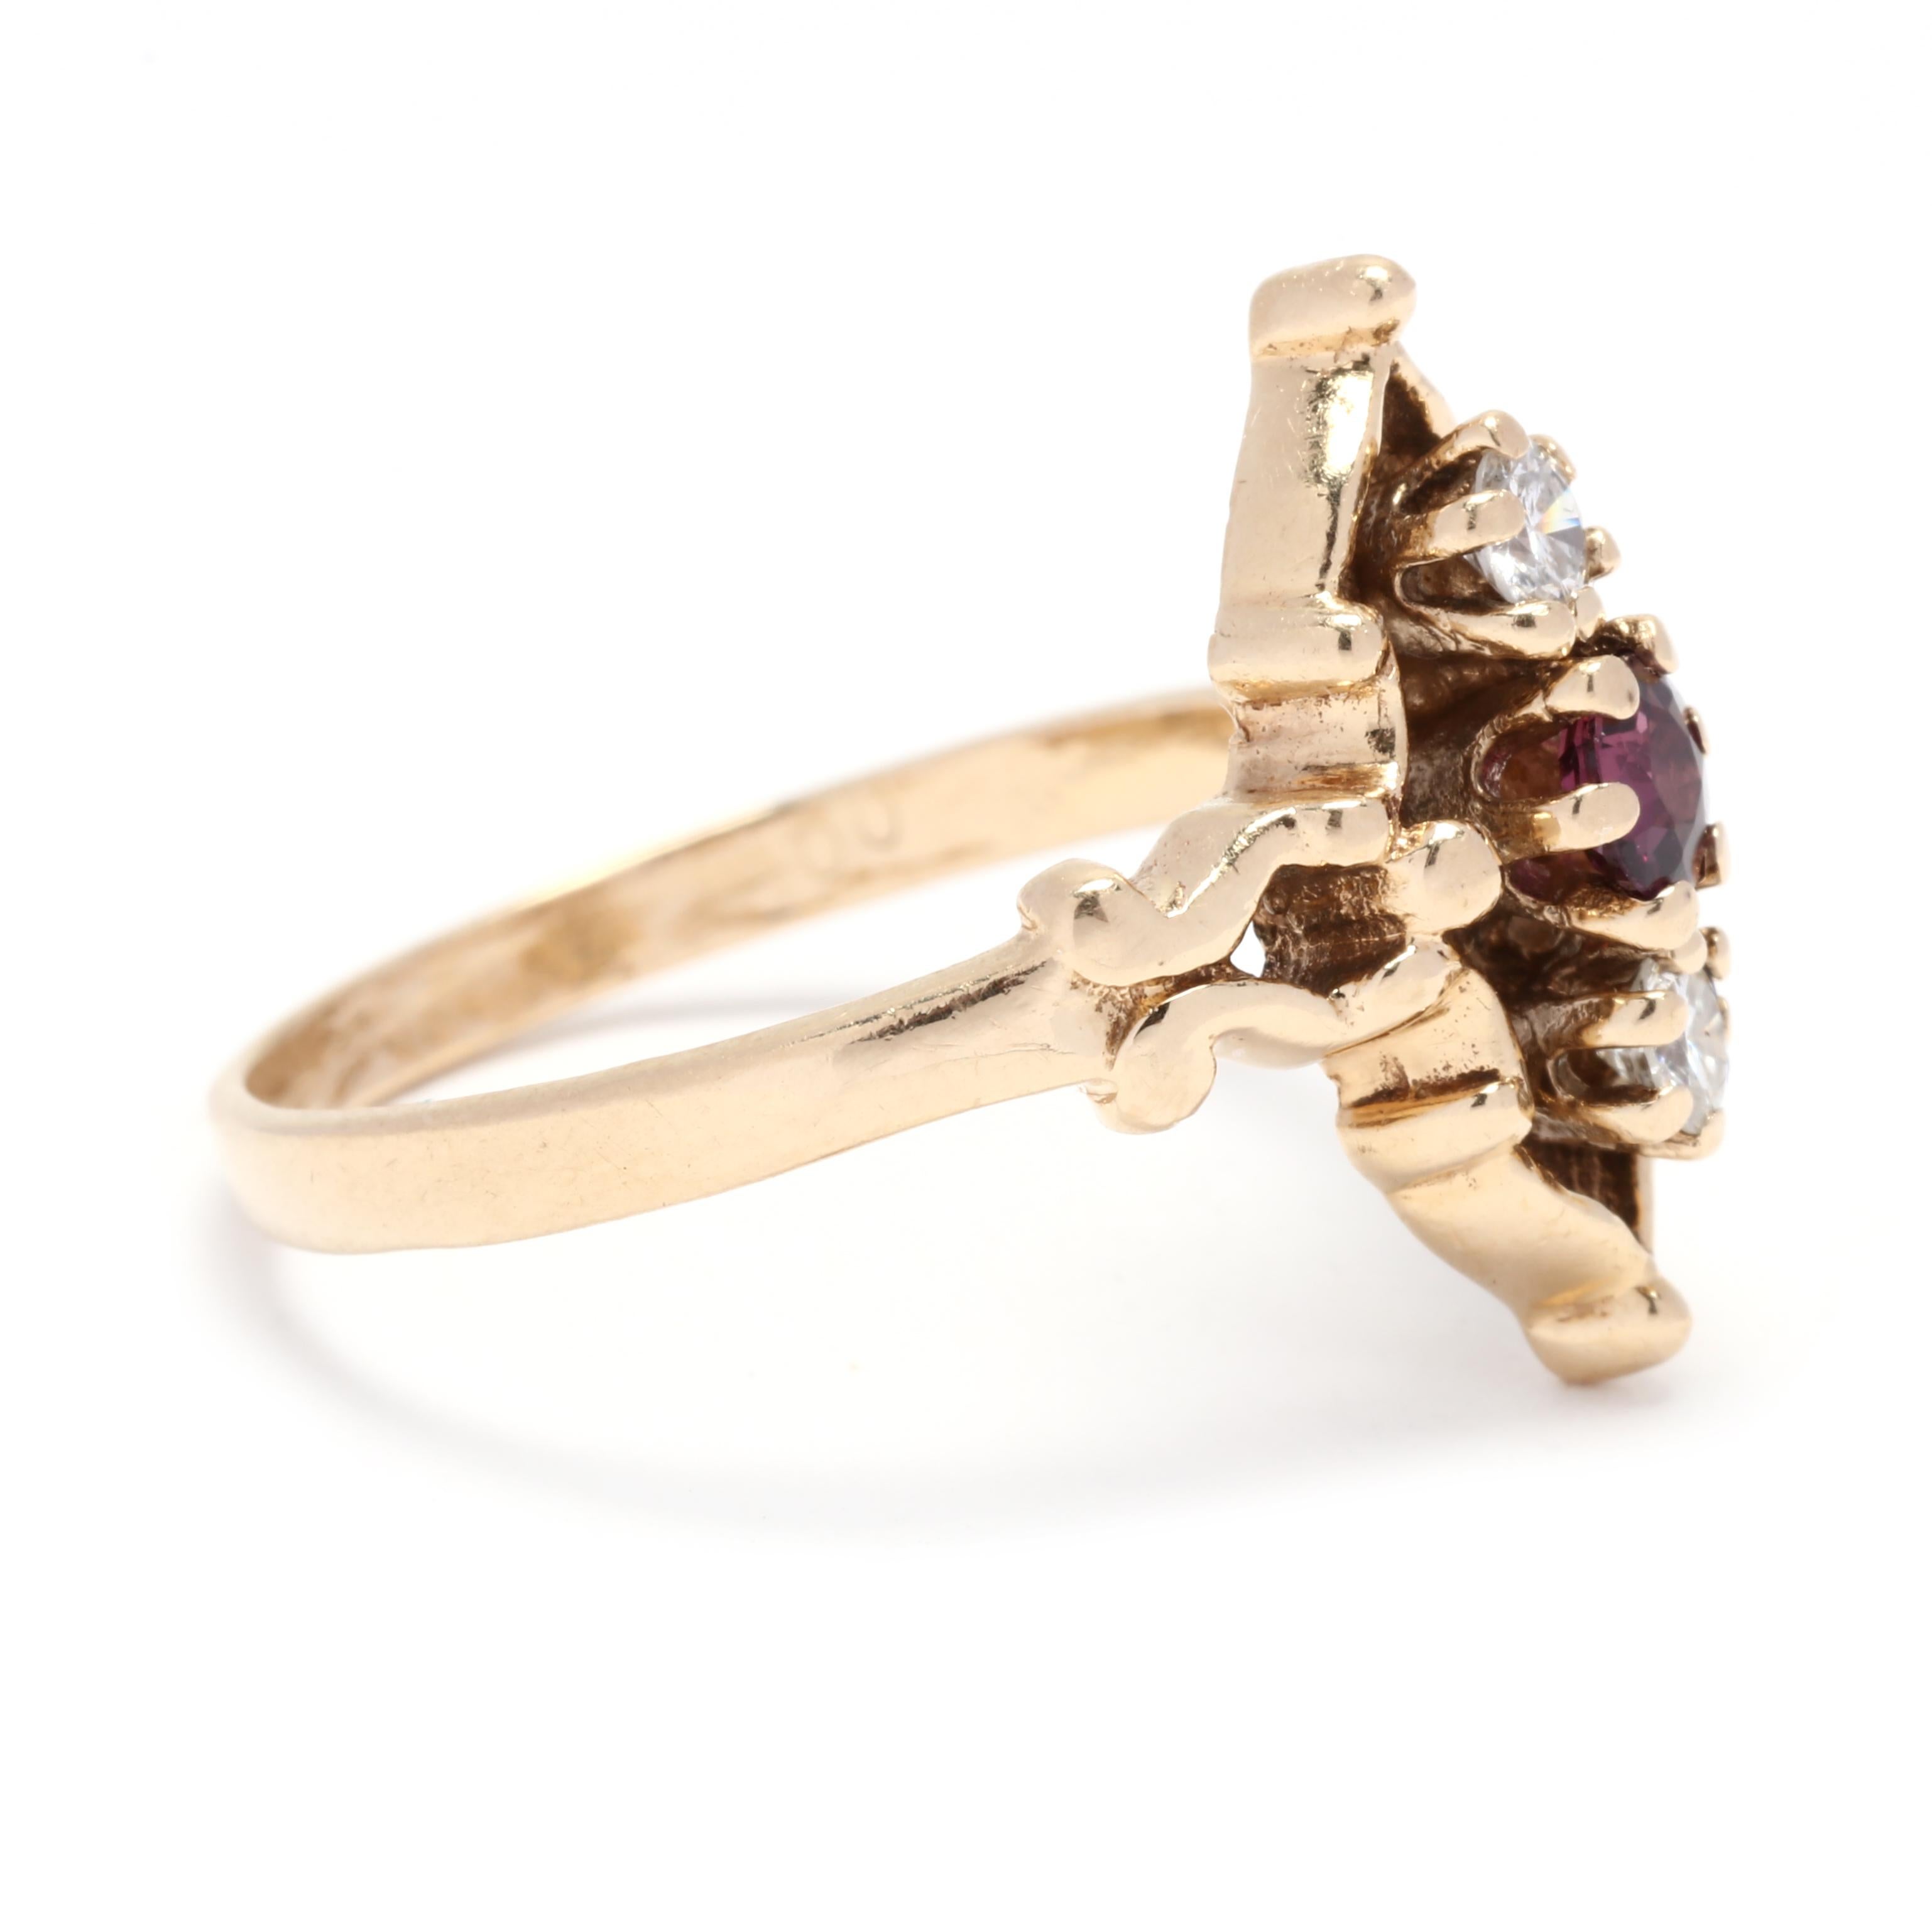 Dieser 0,40ctw Rubin-Diamant-Navette-Ring im Vintage-Stil ist ein wahres Schmuckstück. Dieser Ring aus 14-karätigem Gelbgold hat ein navettenförmiges Cluster-Design mit einem Gesamtkaratgewicht von 0,40. Die Rubine sind birnenförmig und leuchtend